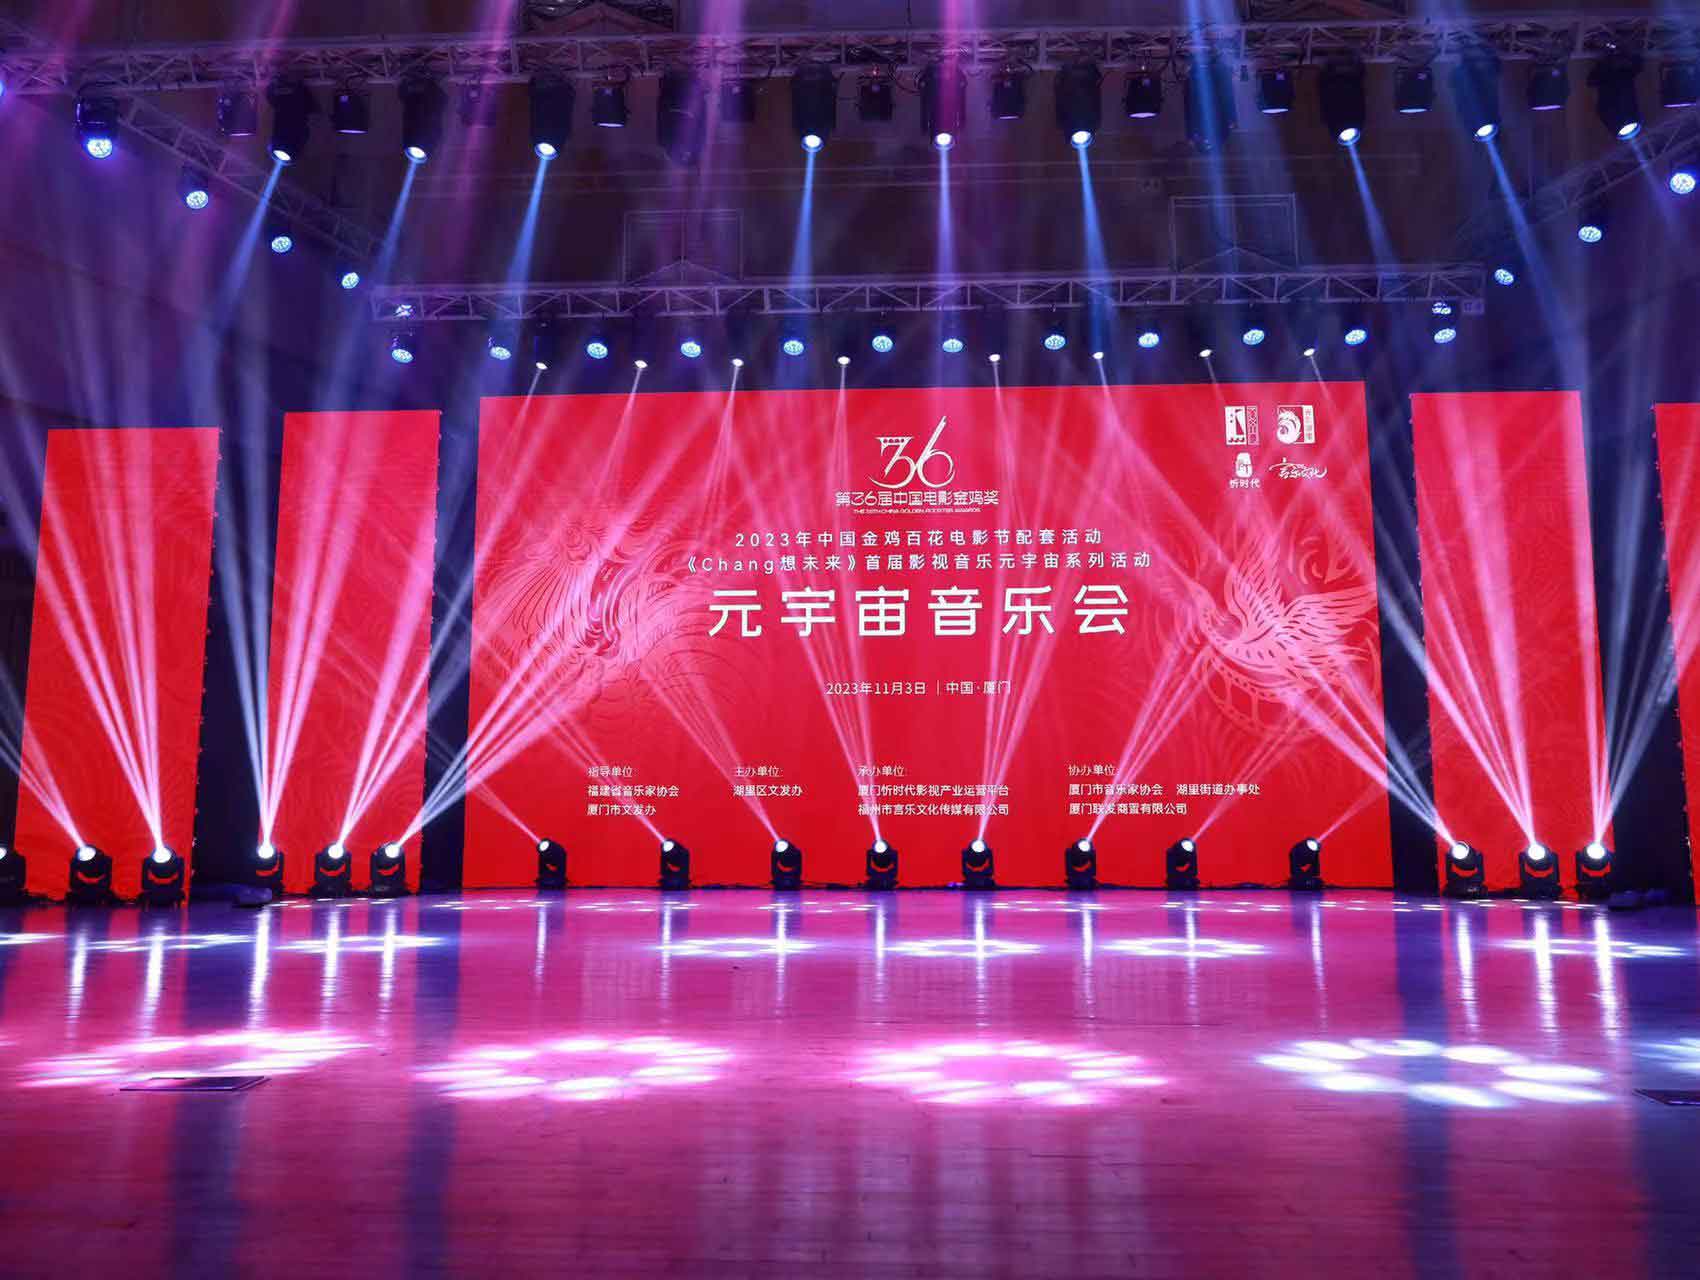 第36屆中國電影金雞獎係列配套活動之元宇宙音樂會